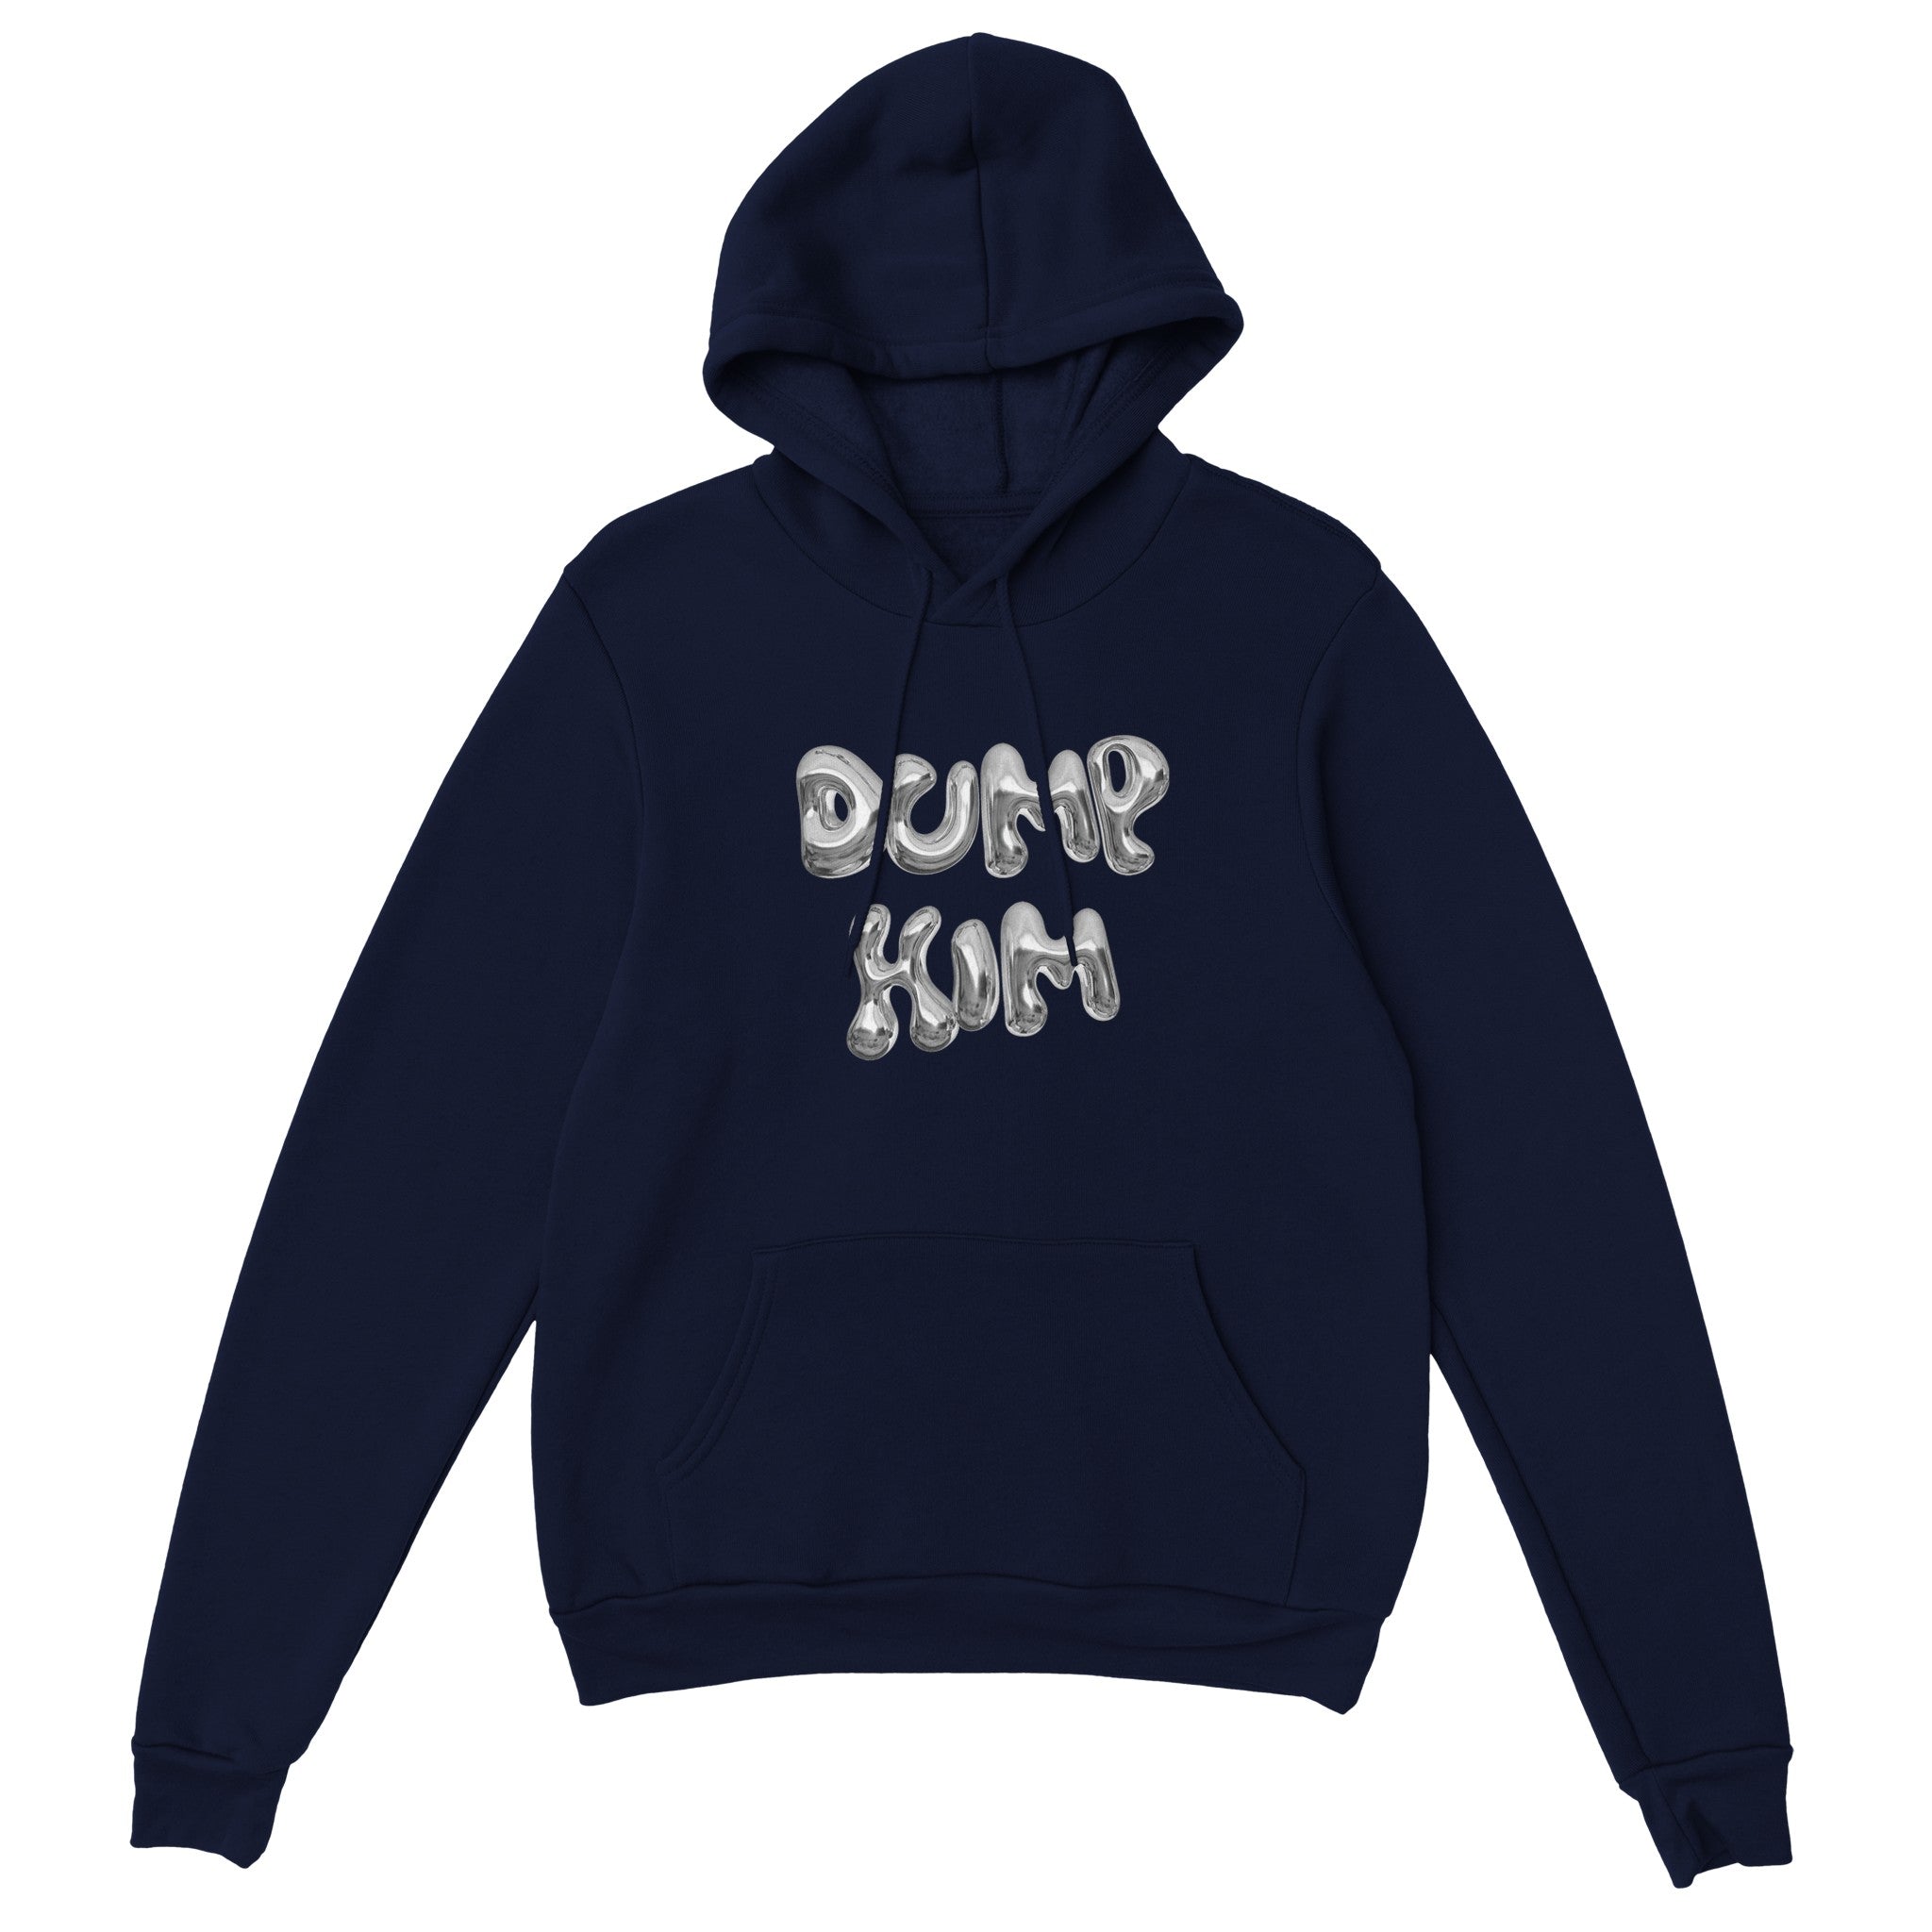 'Dump Him' hoodie - In Print We Trust